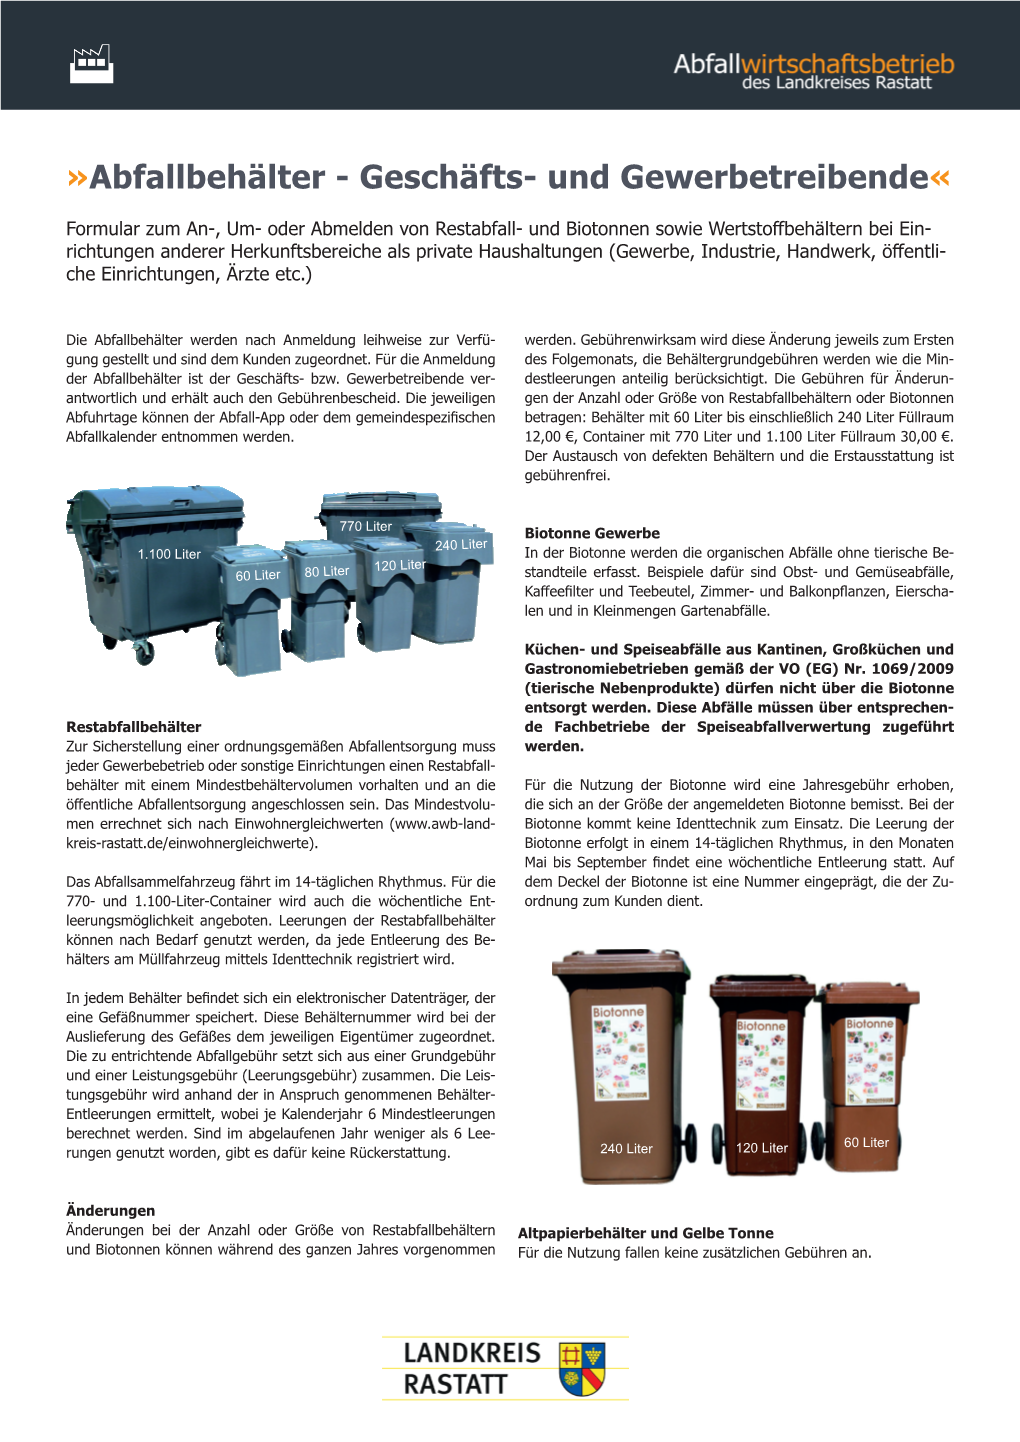 Abfallbehälter - Geschäfts- Und Gewerbetreibende«